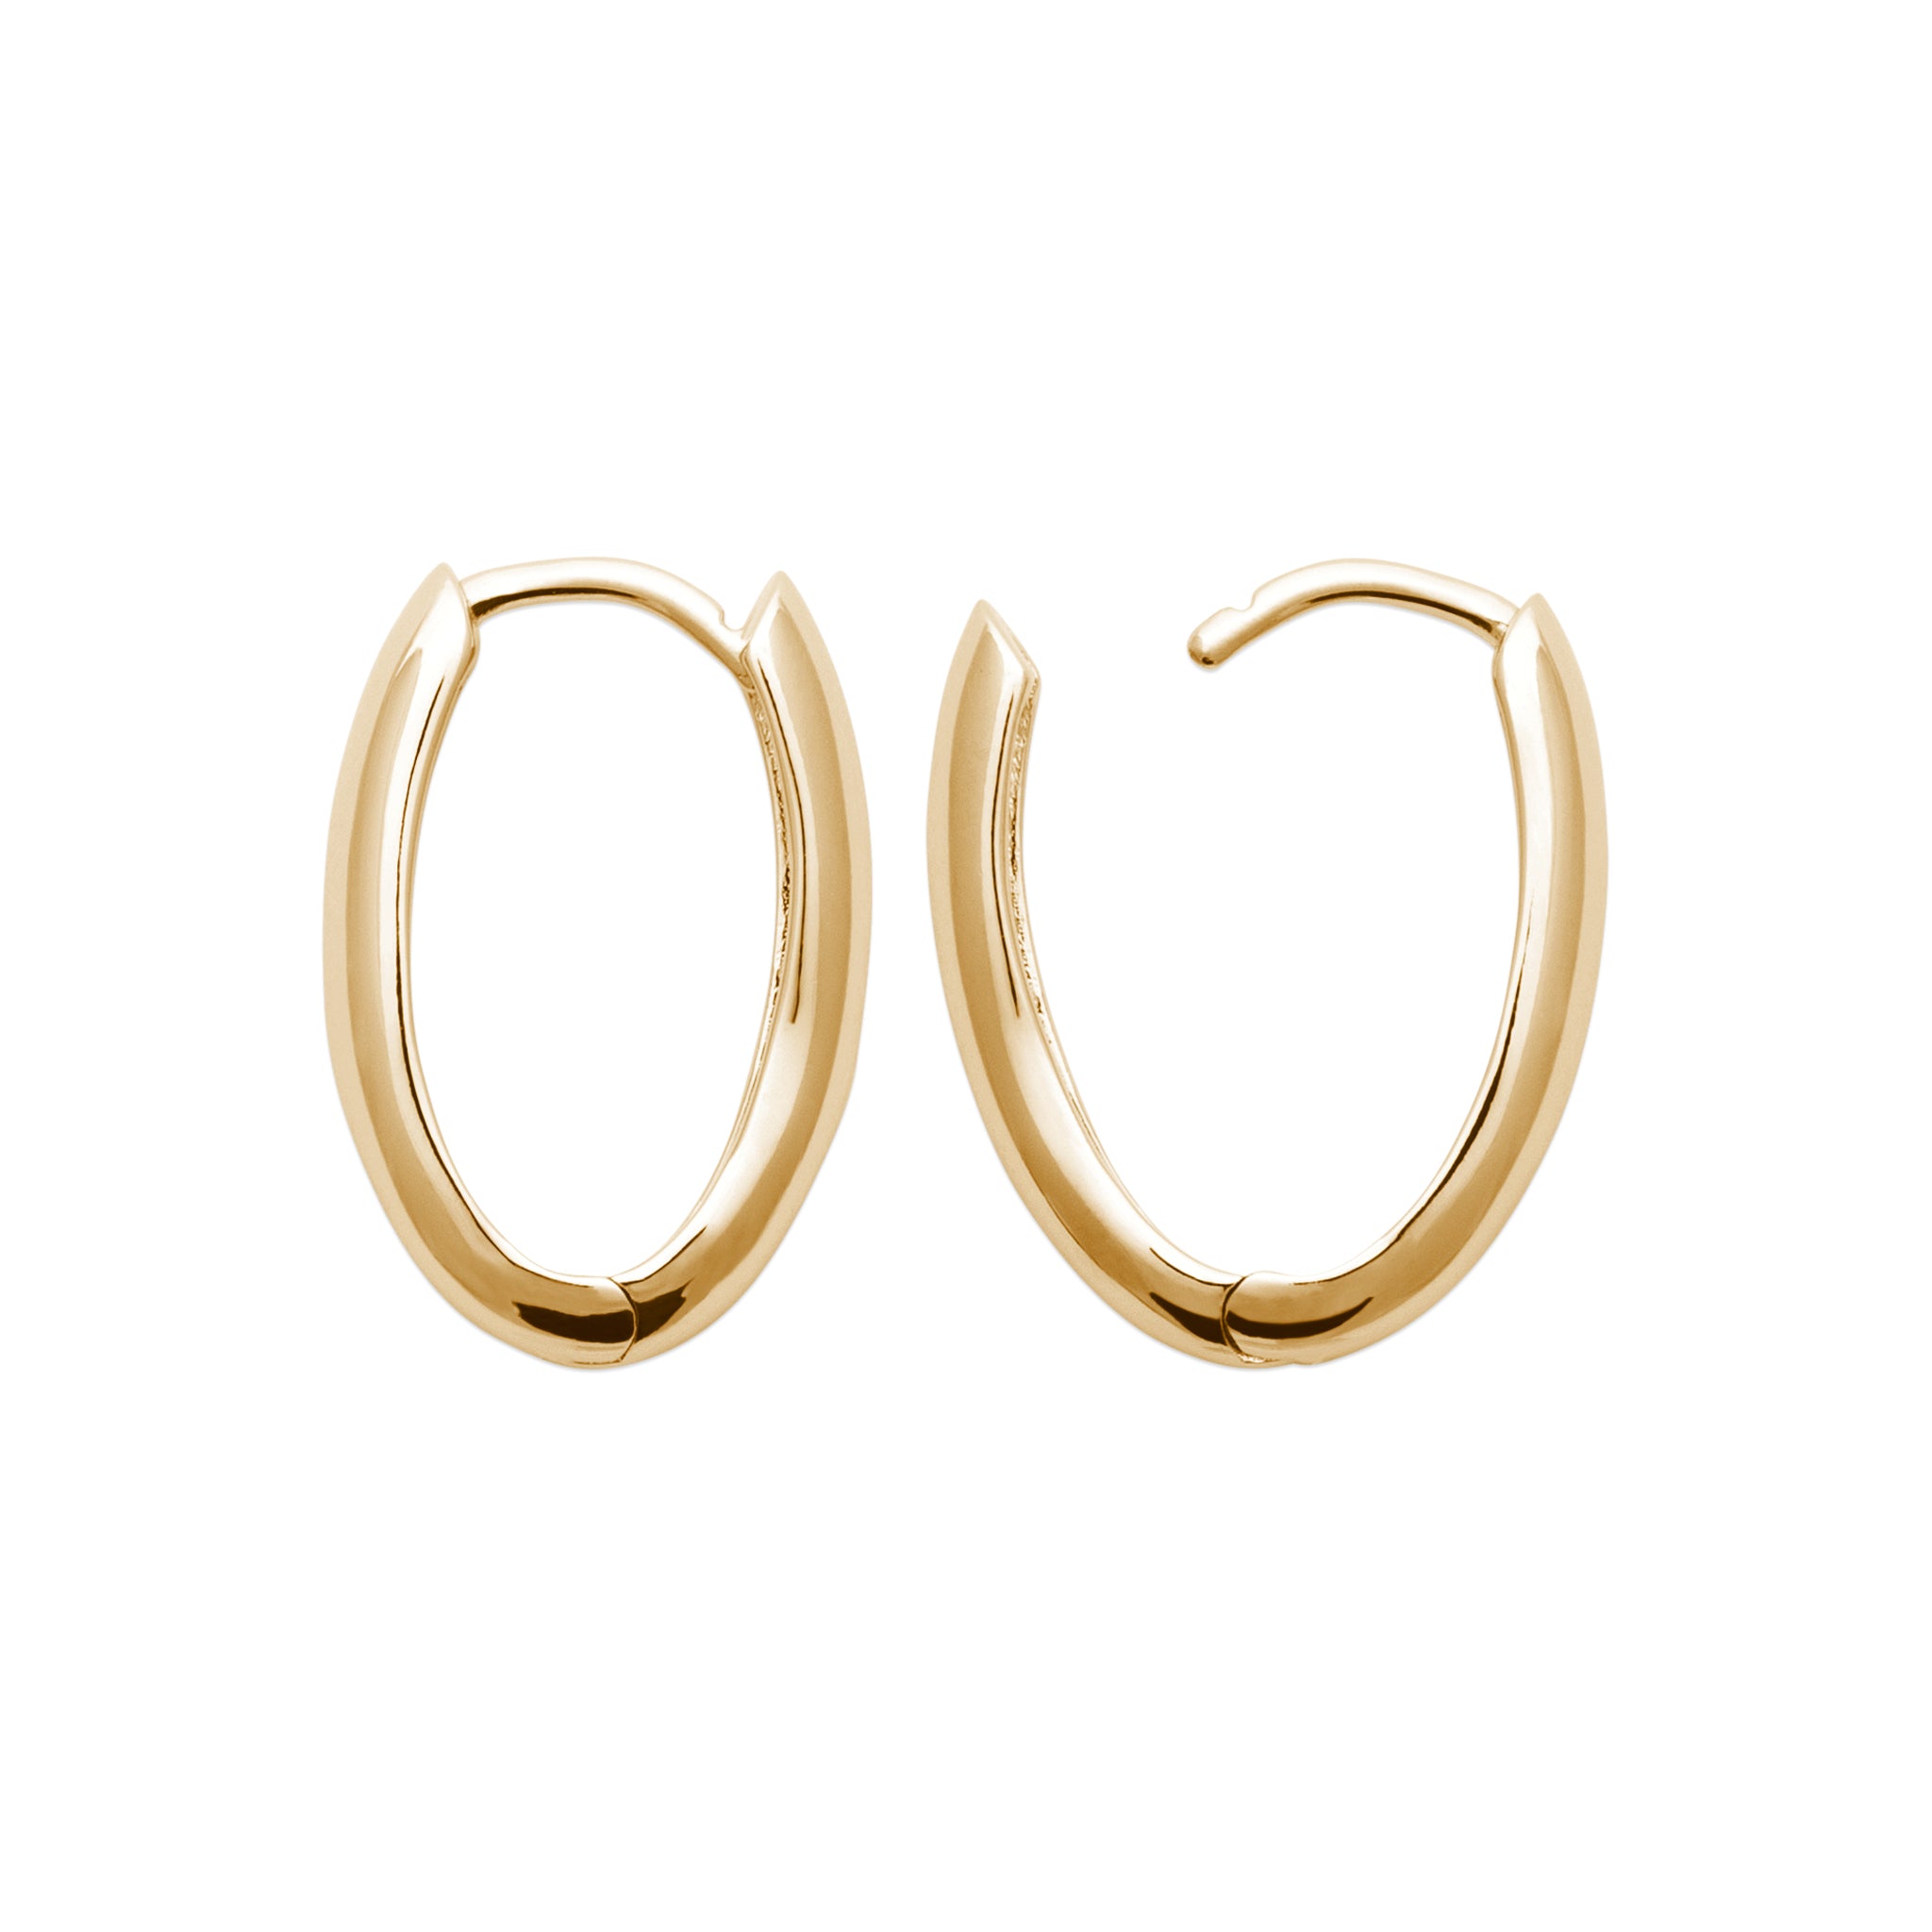 Oval Huggie Earrings